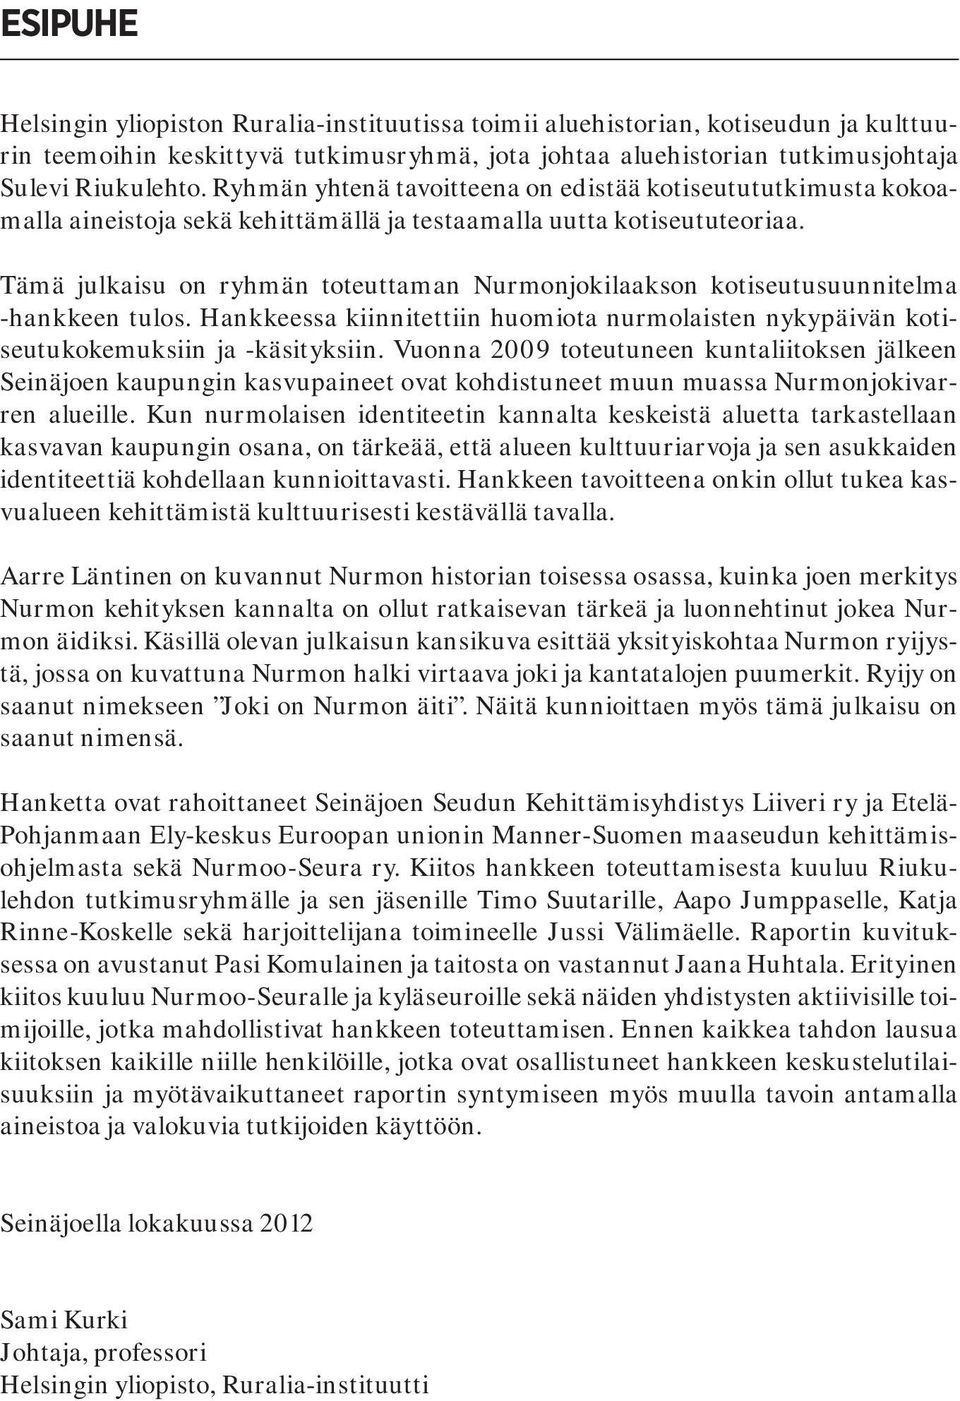 Tämä julkaisu on ryhmän toteuttaman Nurmonjokilaakson kotiseutusuunnitelma -hankkeen tulos. Hankkeessa kiinnitettiin huomiota nurmolaisten nykypäivän kotiseutukokemuksiin ja -käsityksiin.